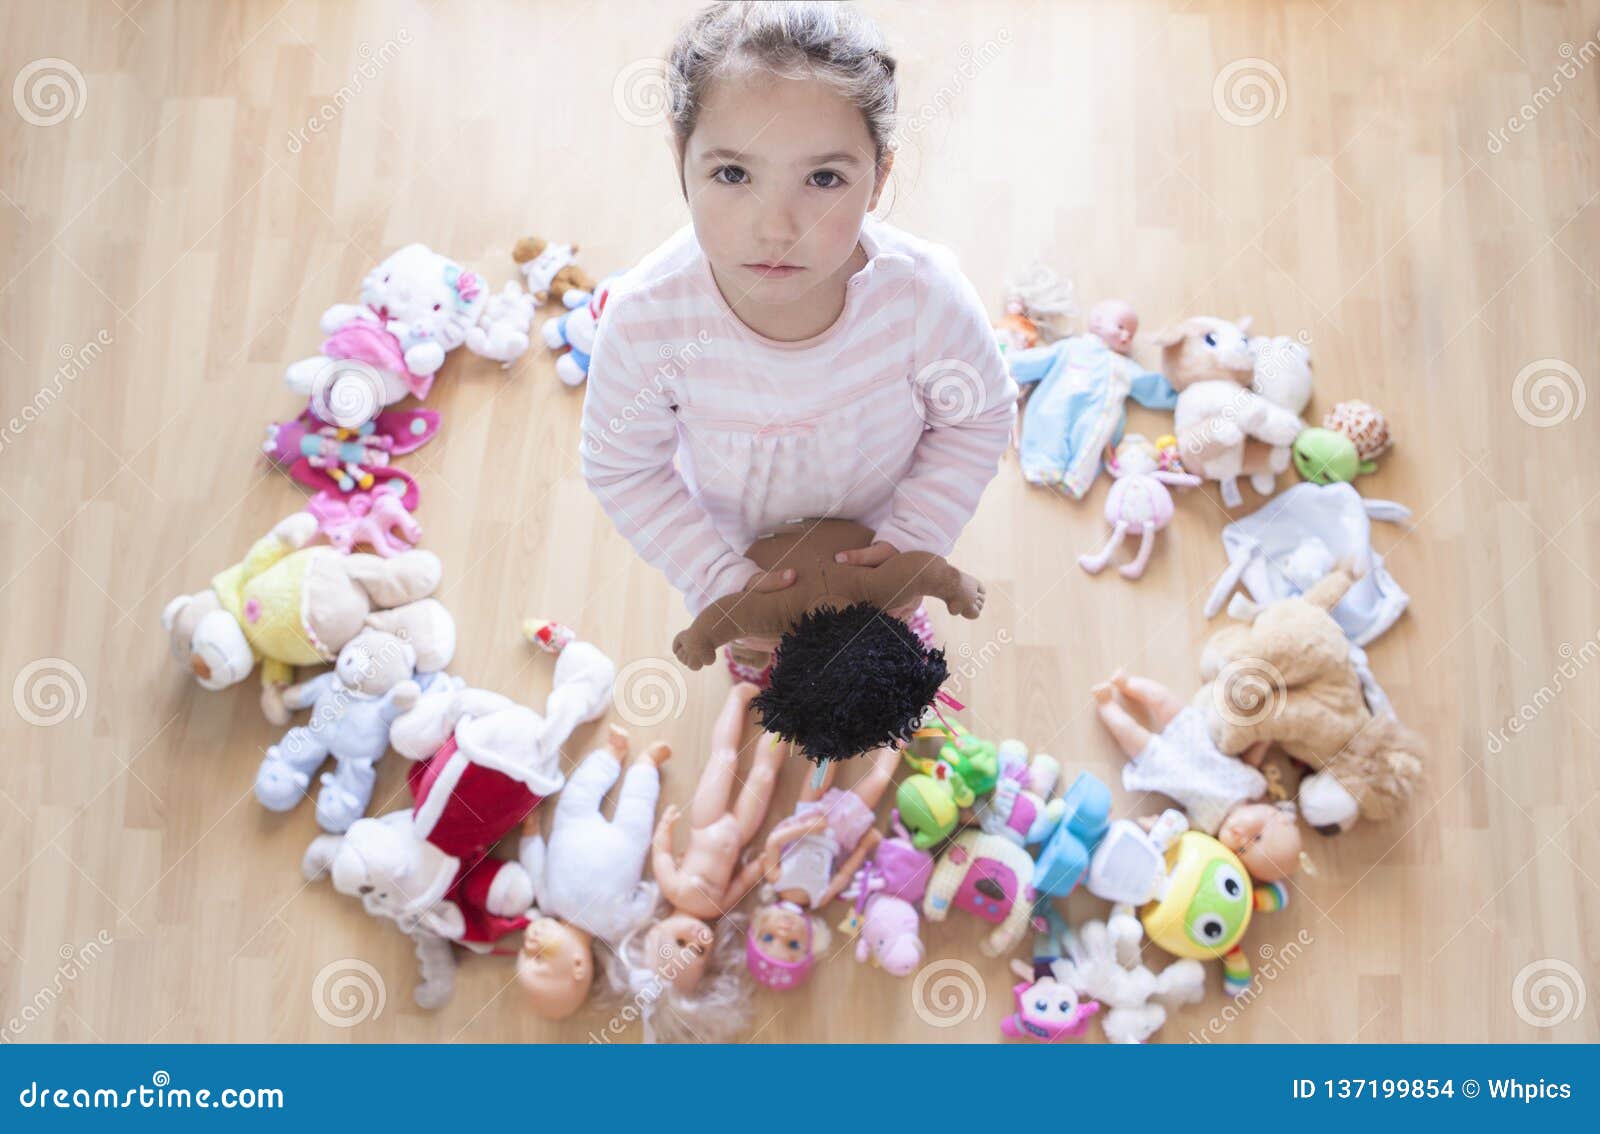 https://thumbs.dreamstime.com/z/a%C3%B1os-de-ni%C3%B1a-infeliz-con-las-porciones-juguetes-demasiado-concepto-los-en-el-comportamiento-infantil-137199854.jpg